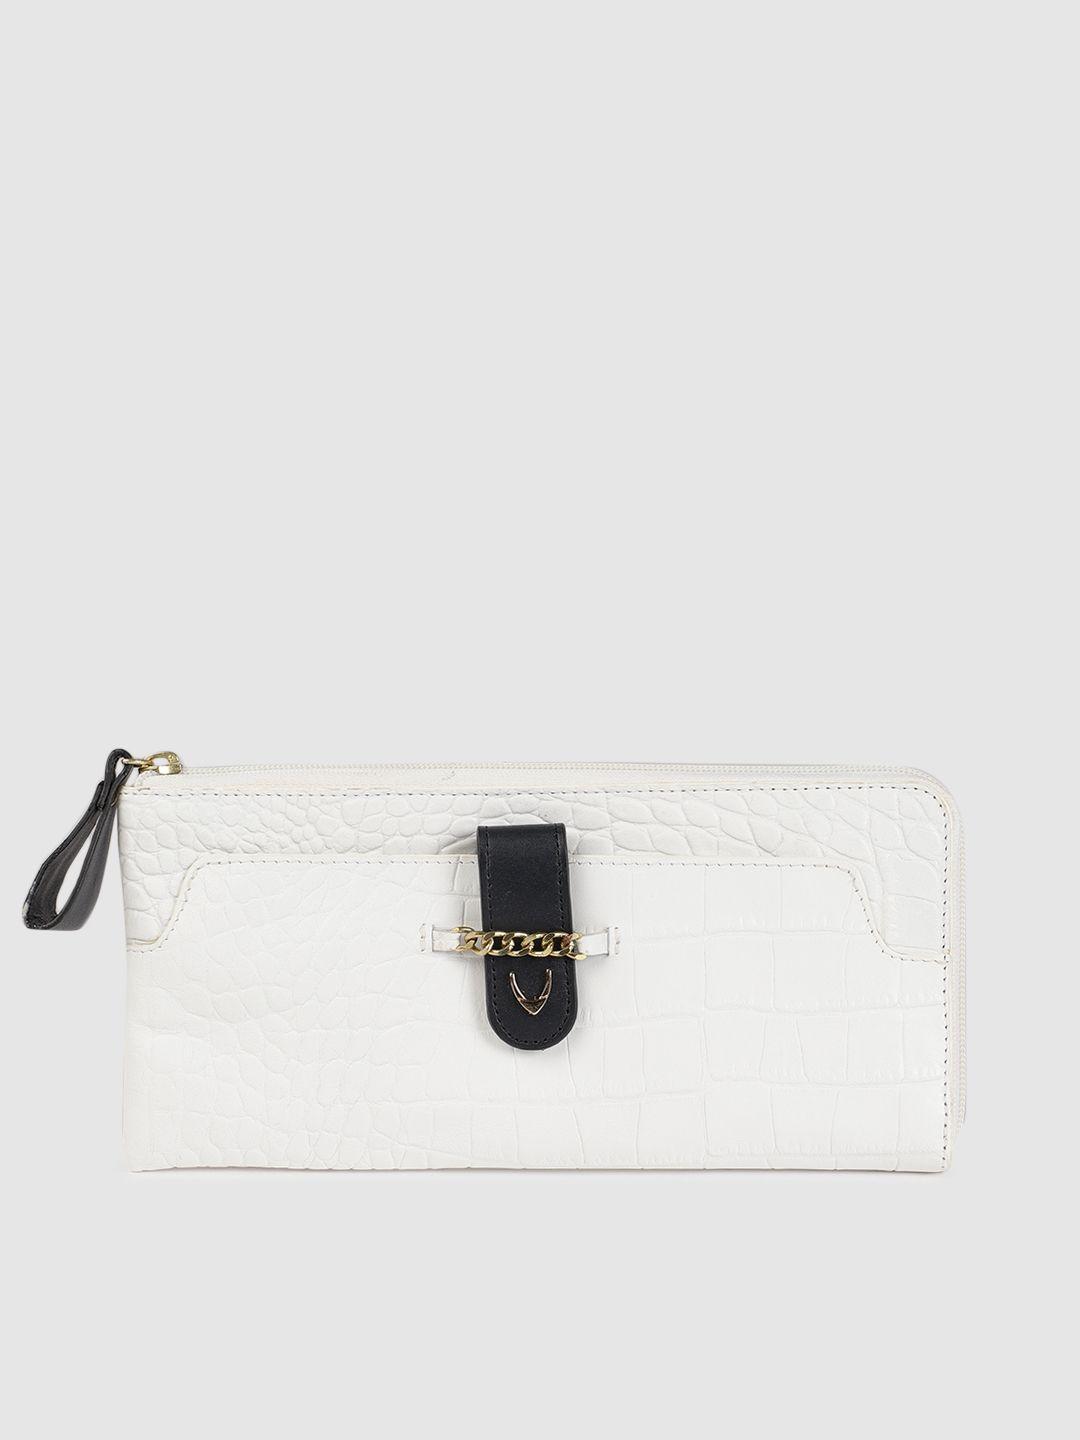 hidesign women white textured leather zip around wallet